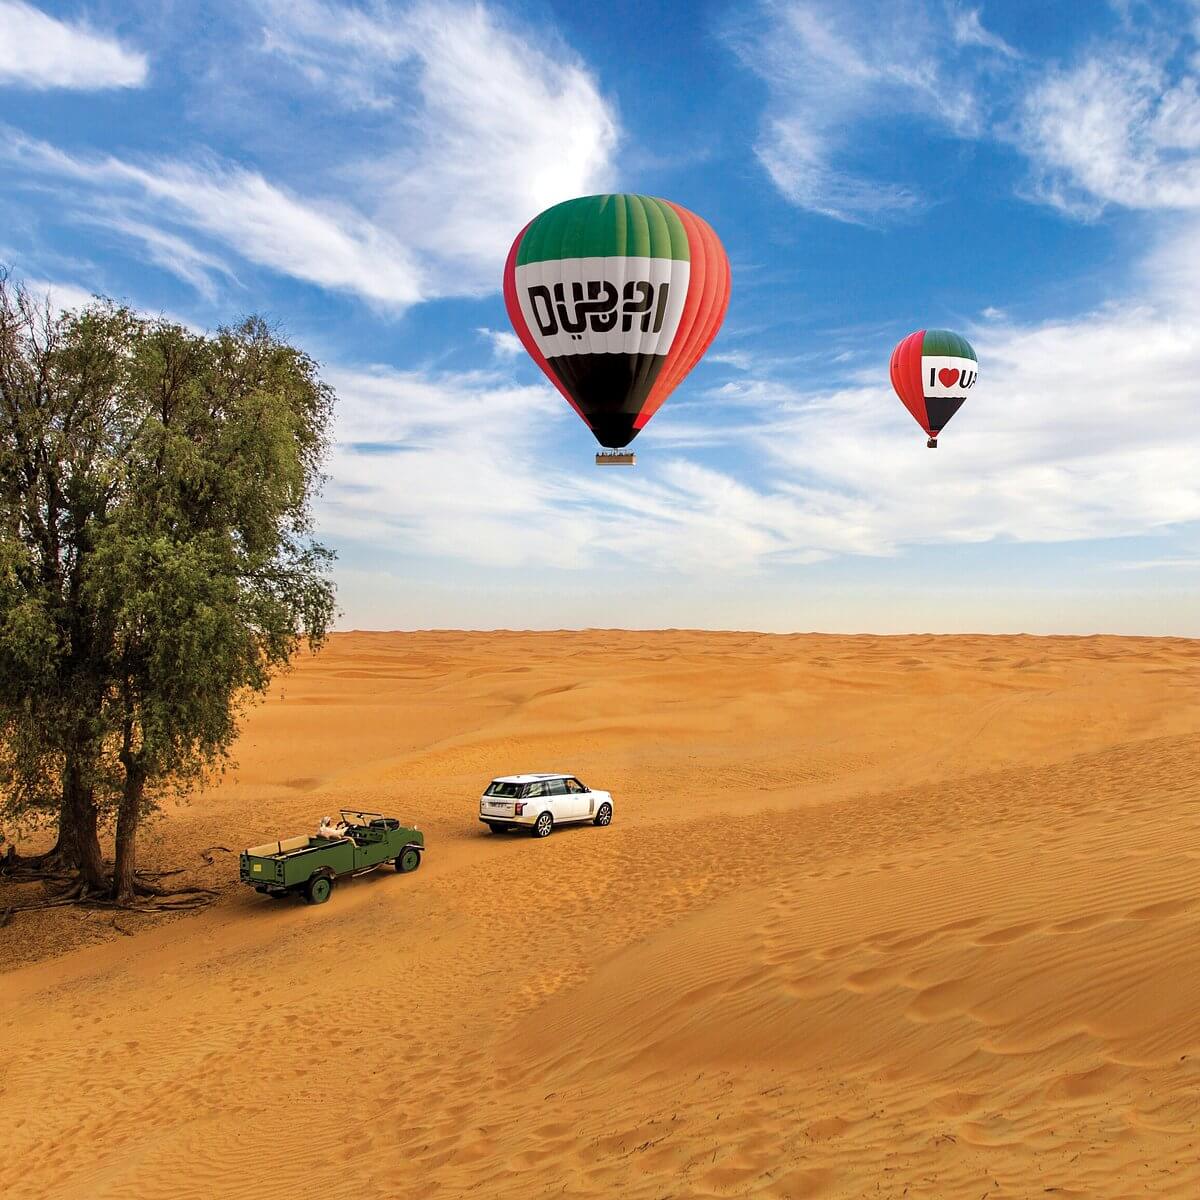 flying-high-a-serene-hot-air-ballon-adventure-in-dubai